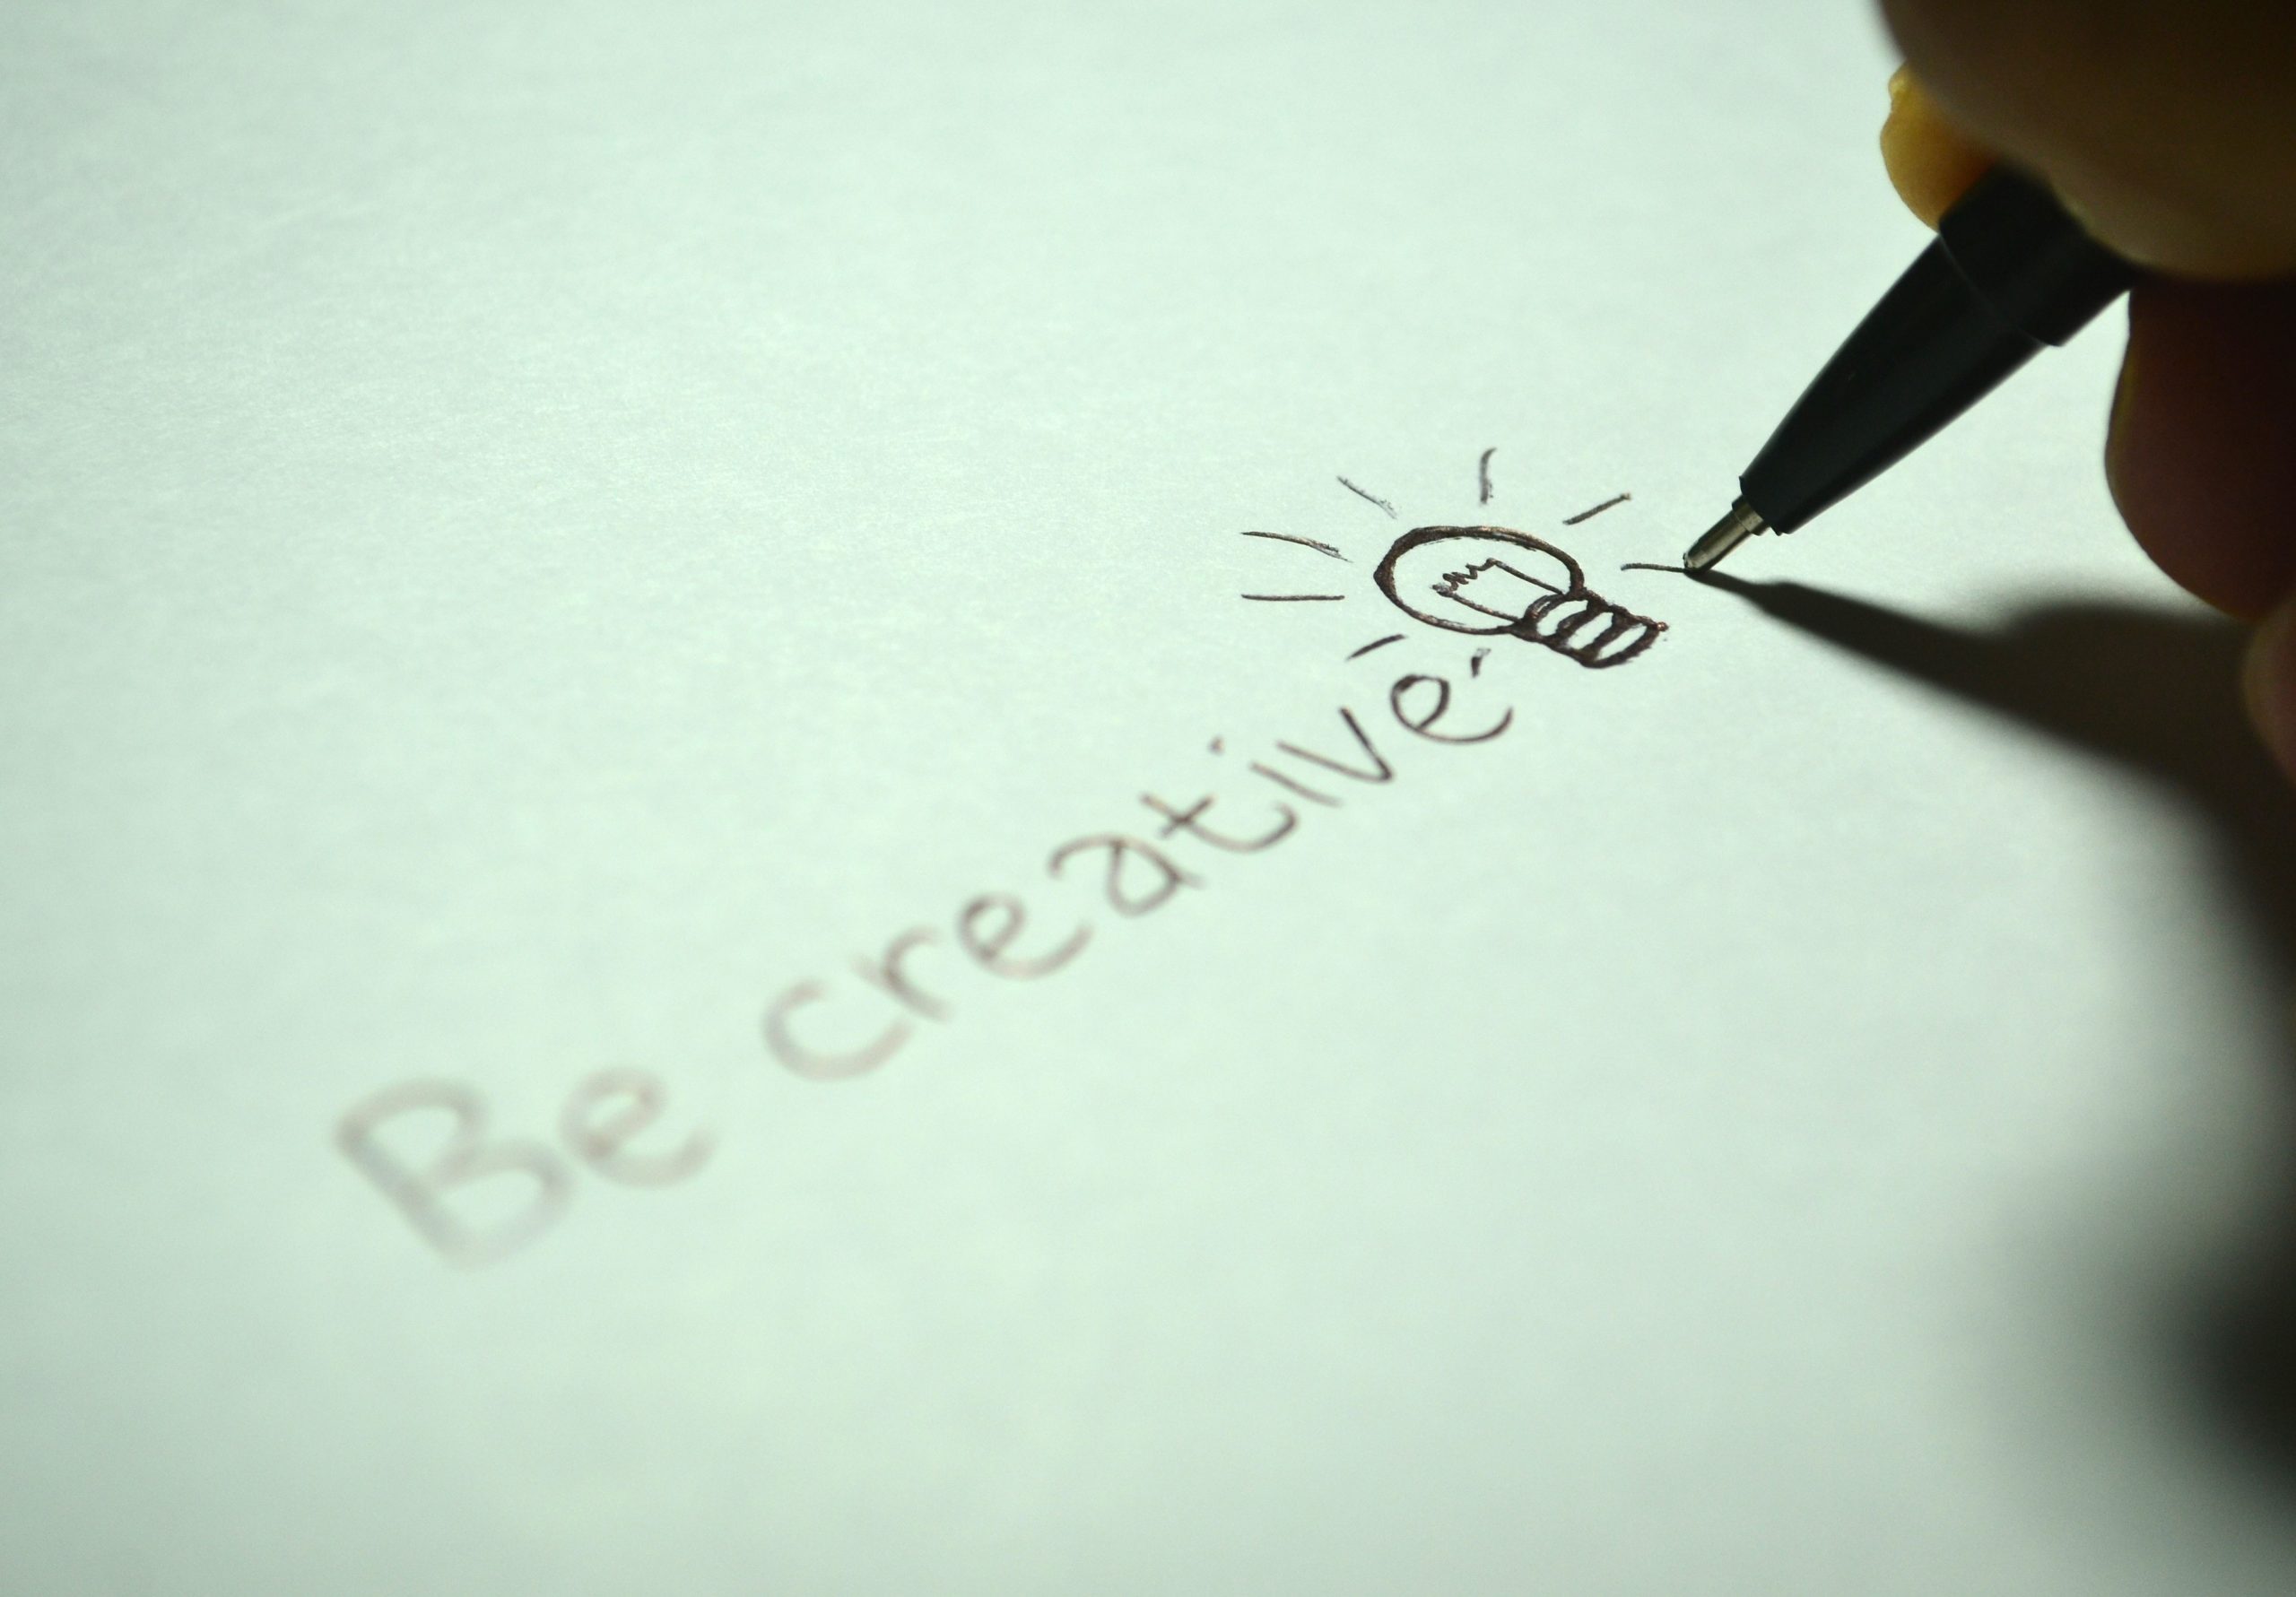 Fora da caixa: como estimular a criatividade?